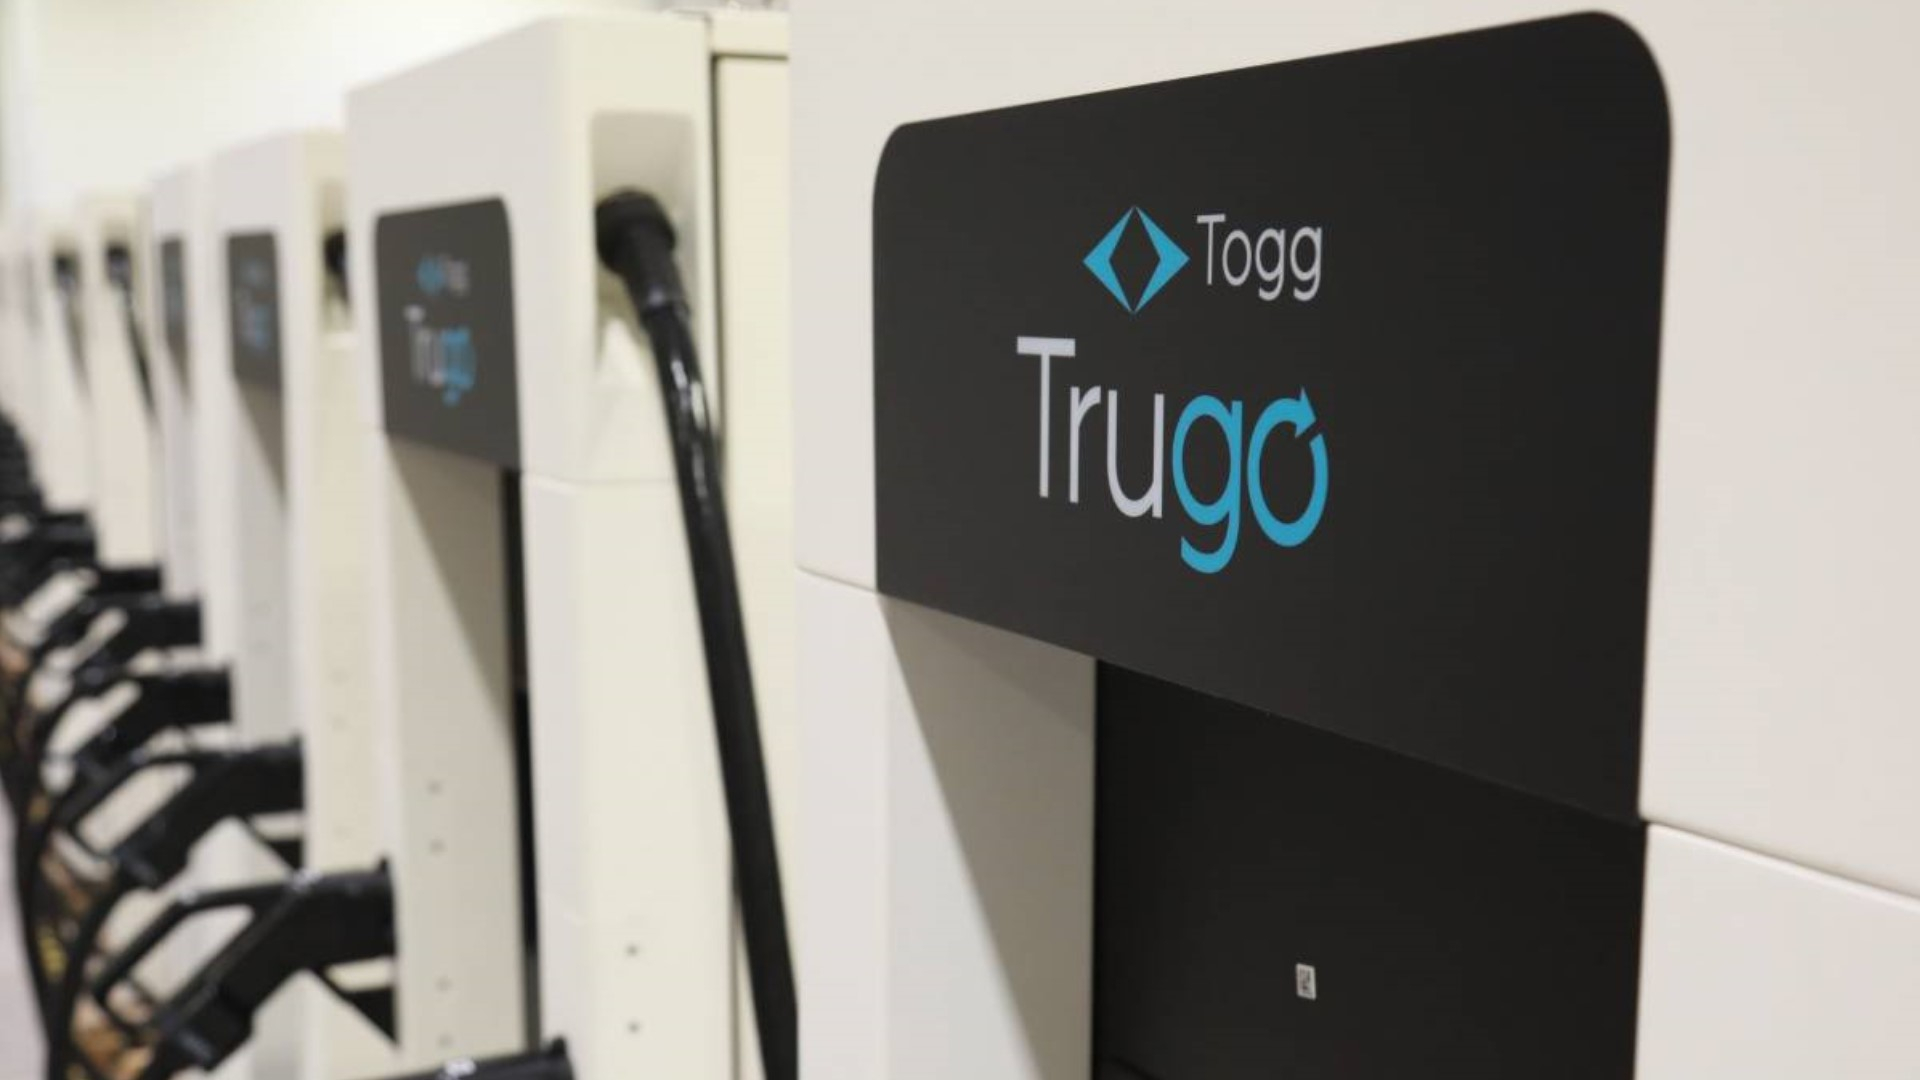 TOGG İçin 400 İstasyonluk Şarj Ağı Hazırlanıyor